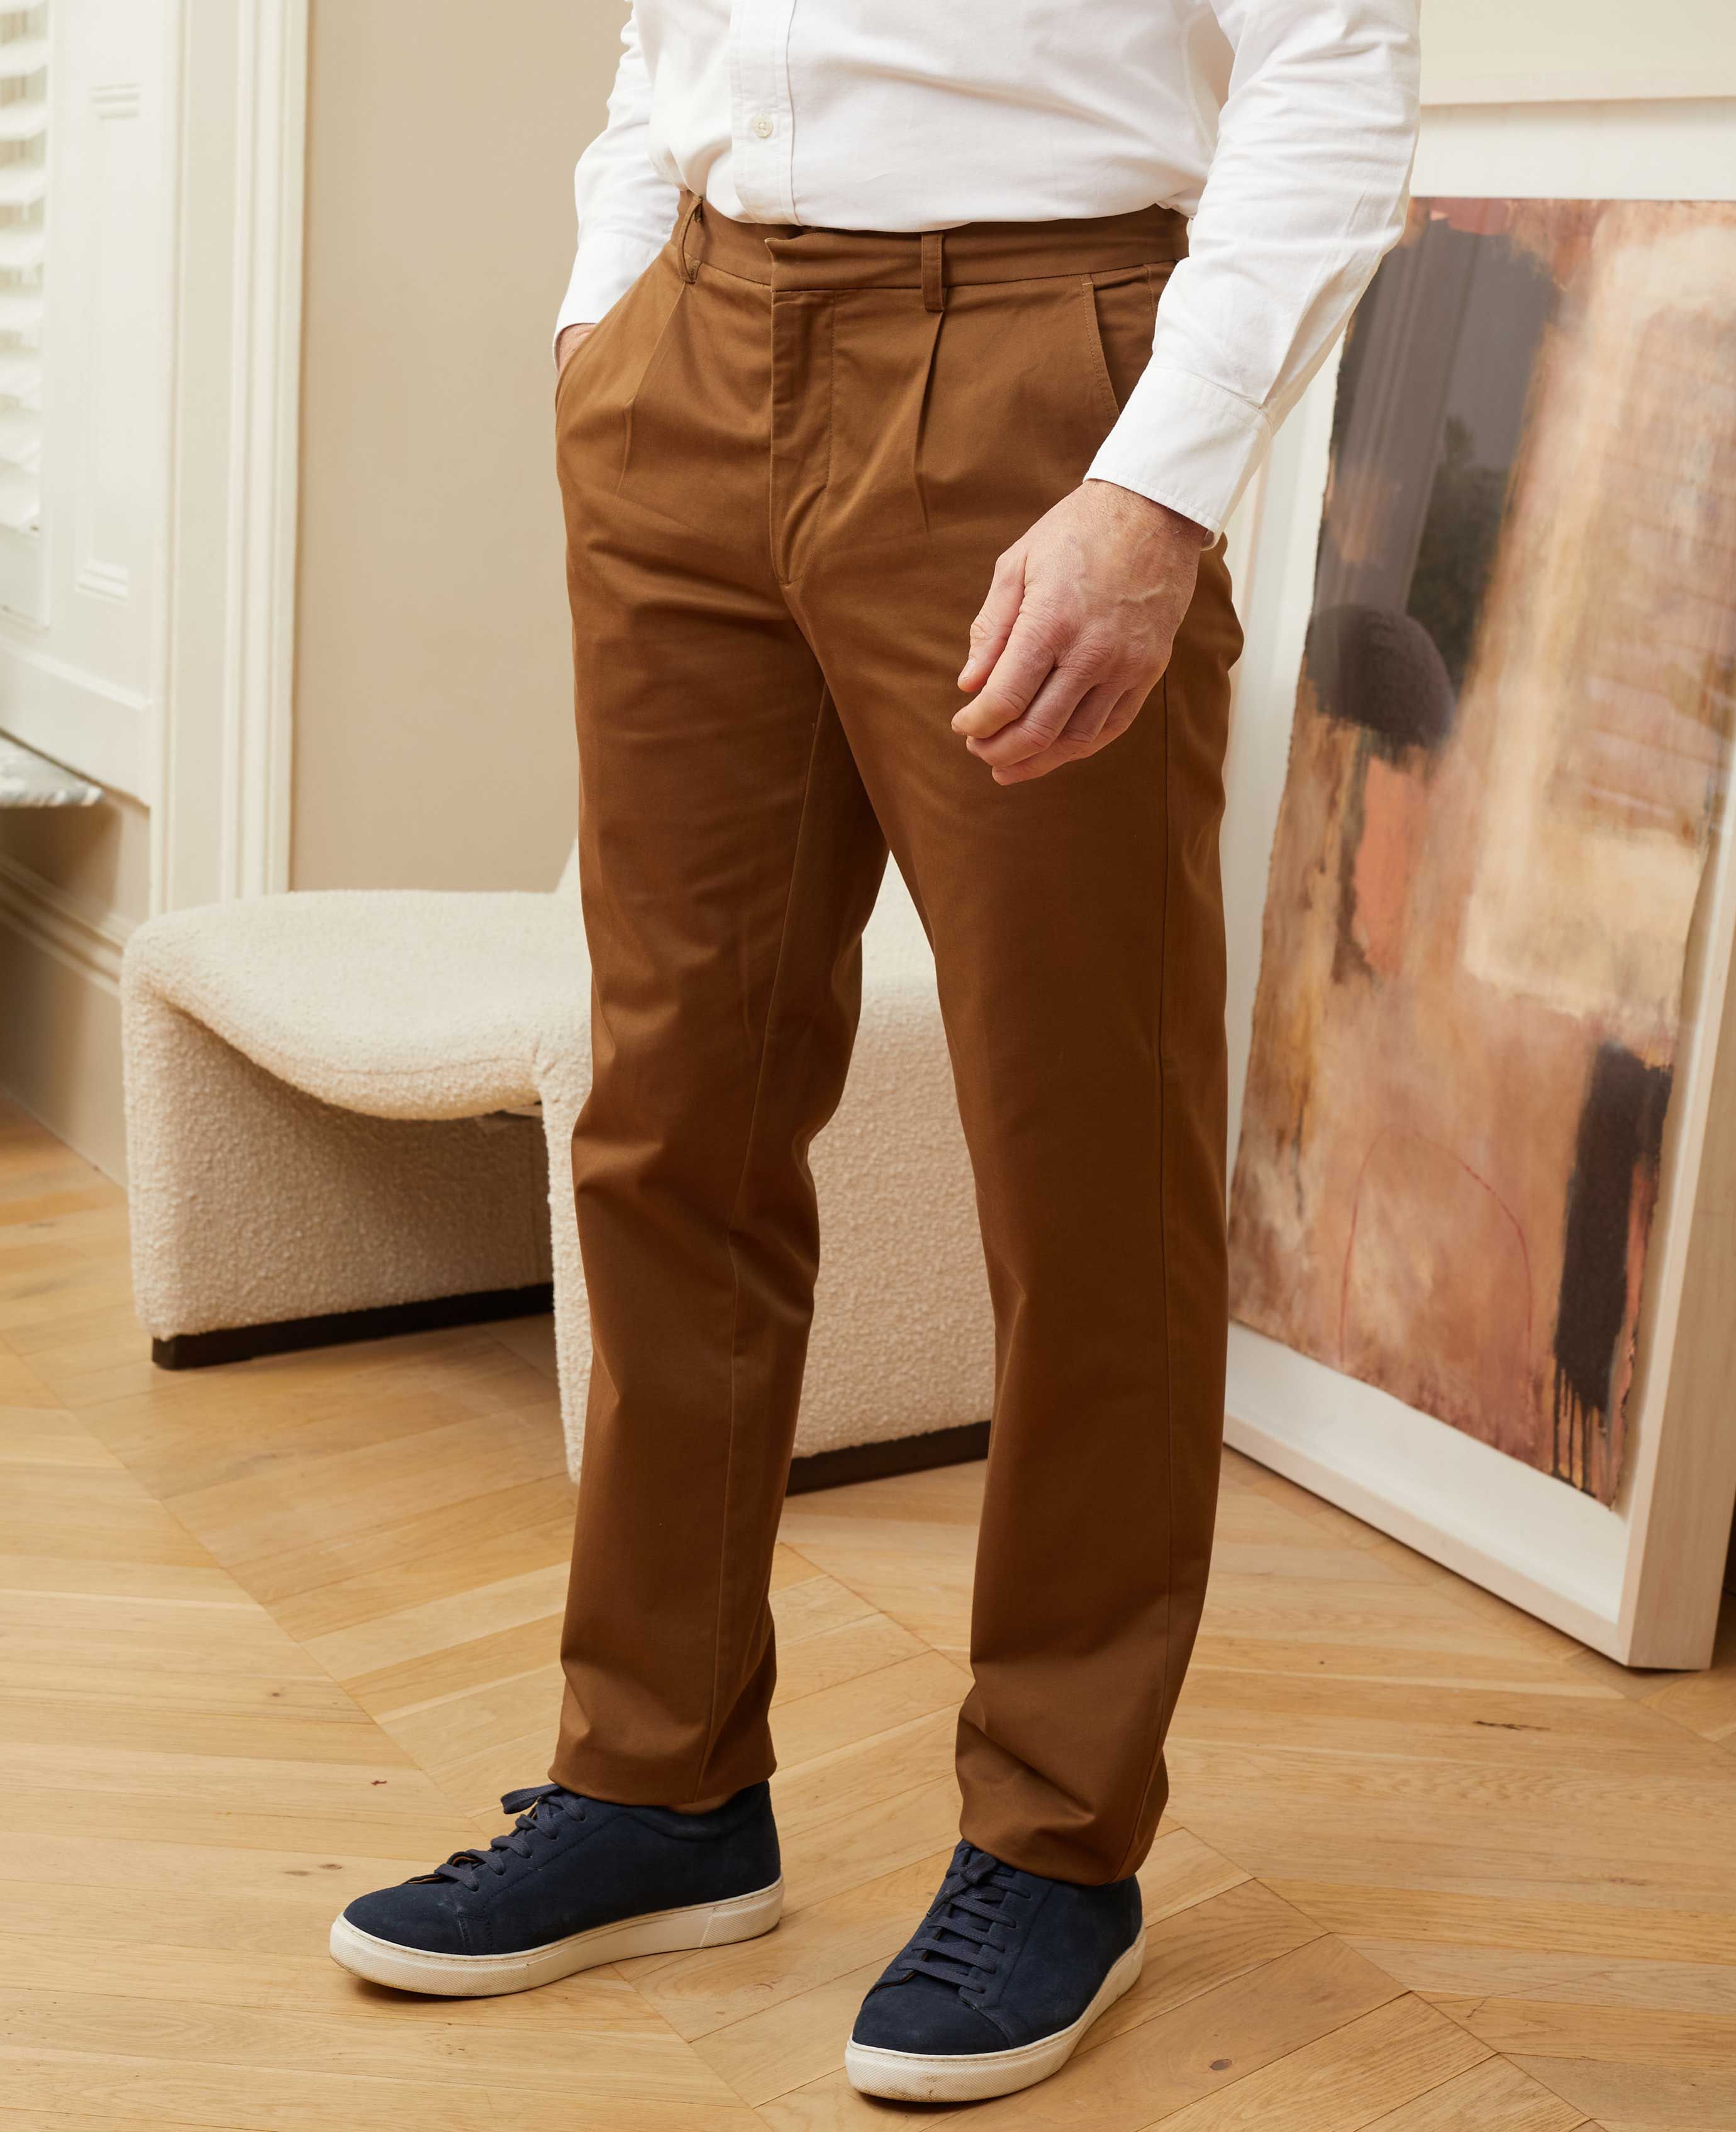 Mua Quần Kaki Nam Lacoste Men's Slim Fit Gabardine Chino Pants HH955302S  Màu Vàng Cát Size 40/34 - Lacoste - Mua tại Vua Hàng Hiệu h095288